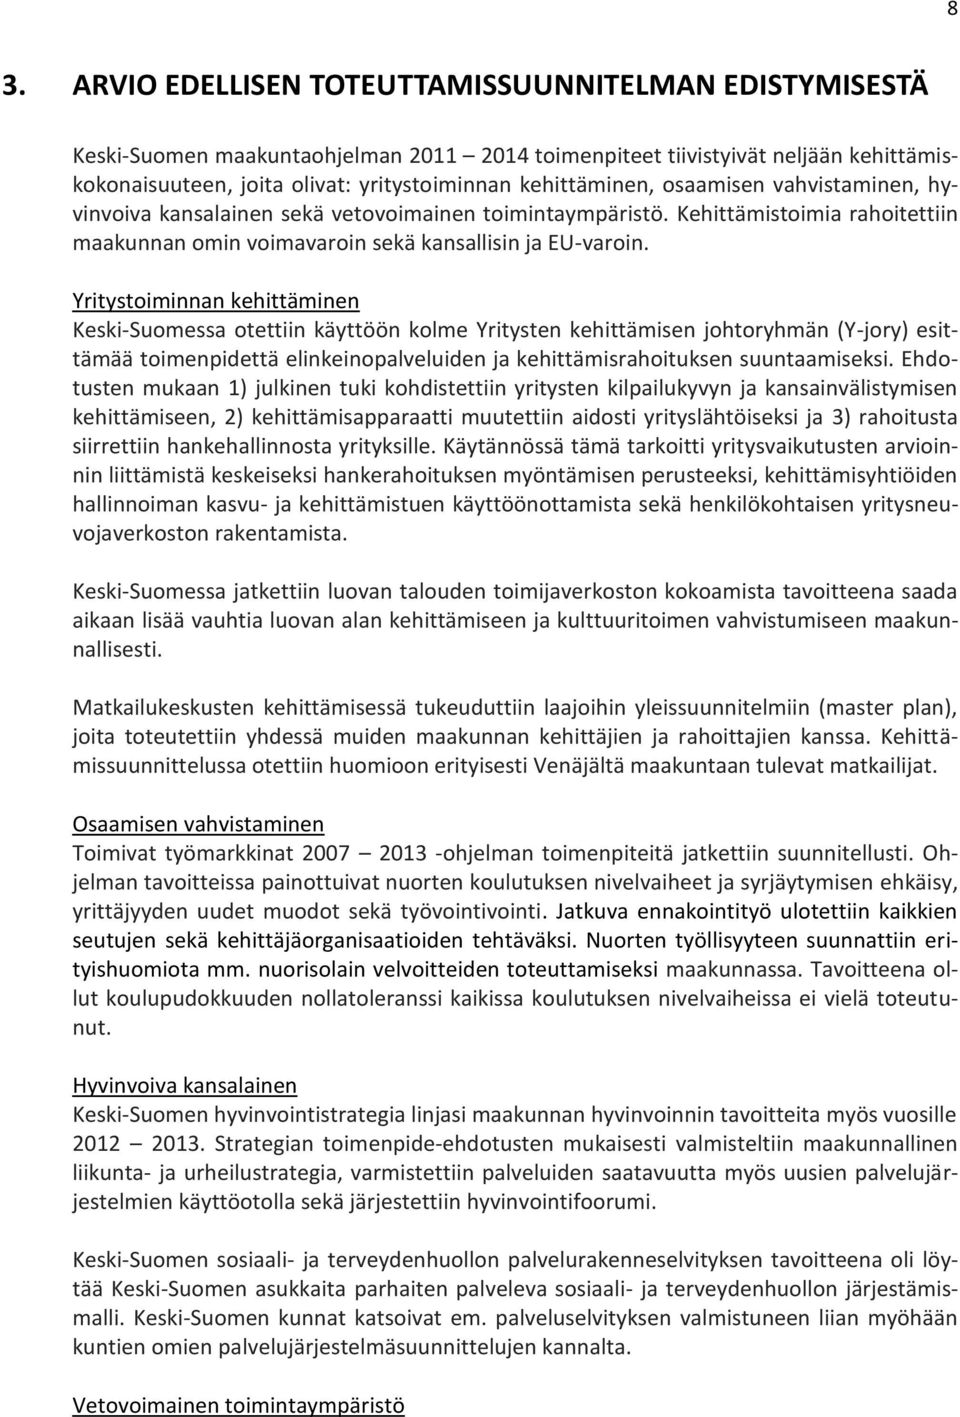 Yritystoiminnan kehittäminen Keski-Suomessa otettiin käyttöön kolme Yritysten kehittämisen johtoryhmän (Y-jory) esittämää toimenpidettä elinkeinopalveluiden ja kehittämisrahoituksen suuntaamiseksi.